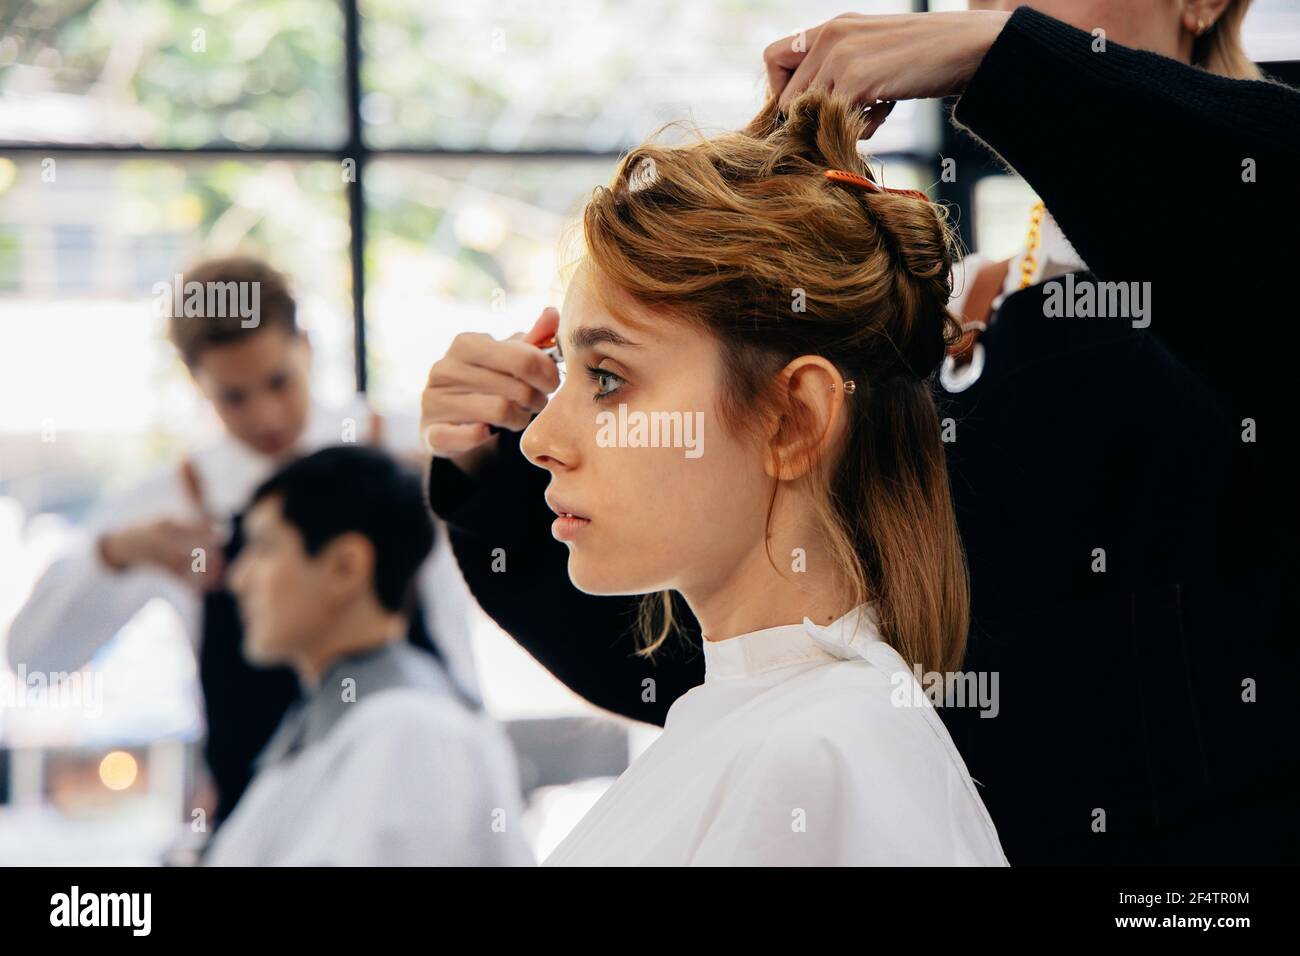 Schöne junge kaukasische Frau sitzt in modernen Salon mit Wrap Rund um einen Haarschnitt mit Hairstyling von weiblichen Friseur tragen Schürze Stockfoto